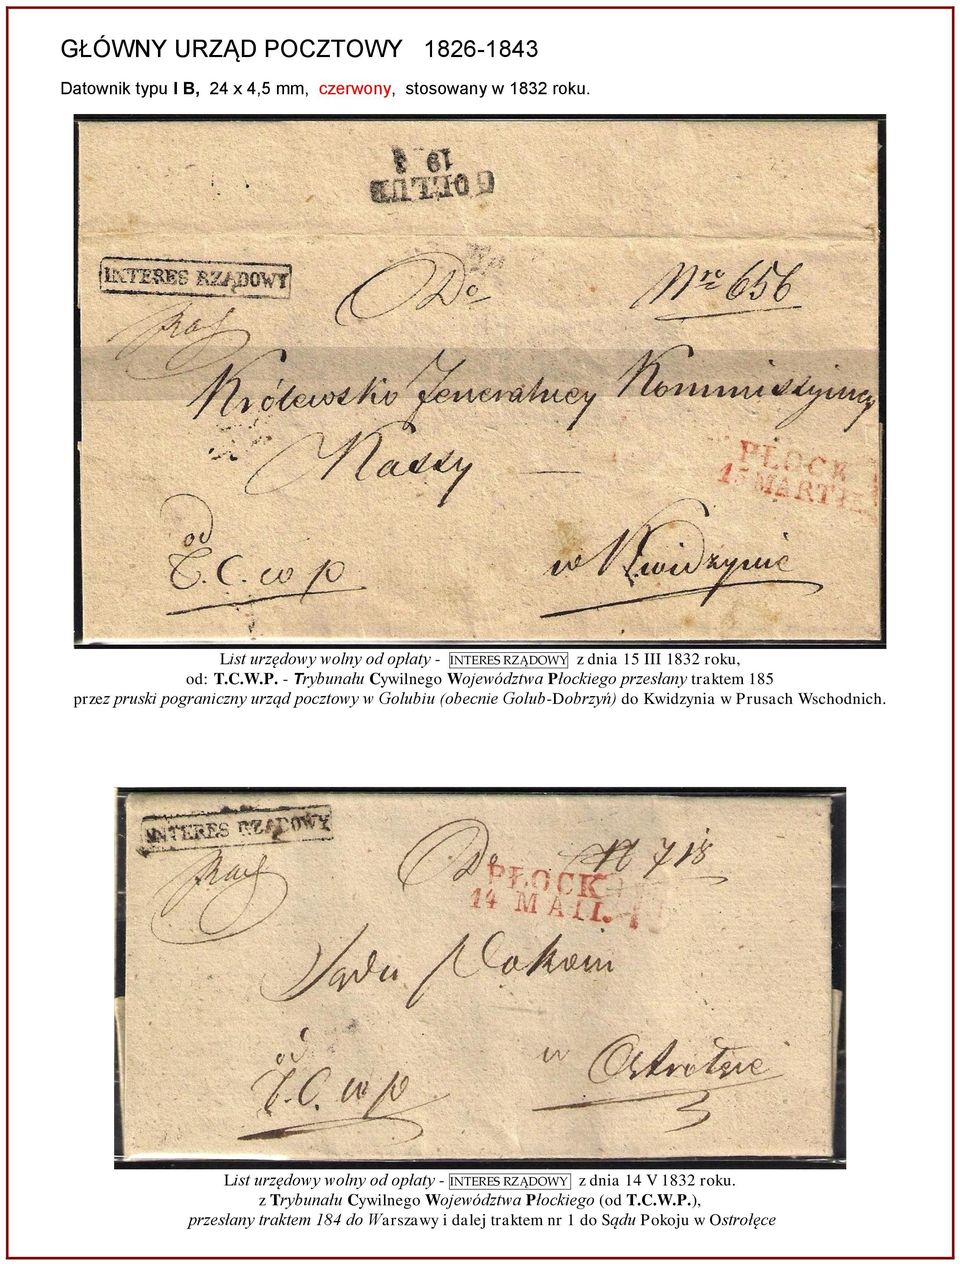 - Trybunału Cywilnego Województwa Płockiego przesłany traktem 185 przez pruski pograniczny urząd pocztowy w Golubiu (obecnie Golub-Dobrzyń) do